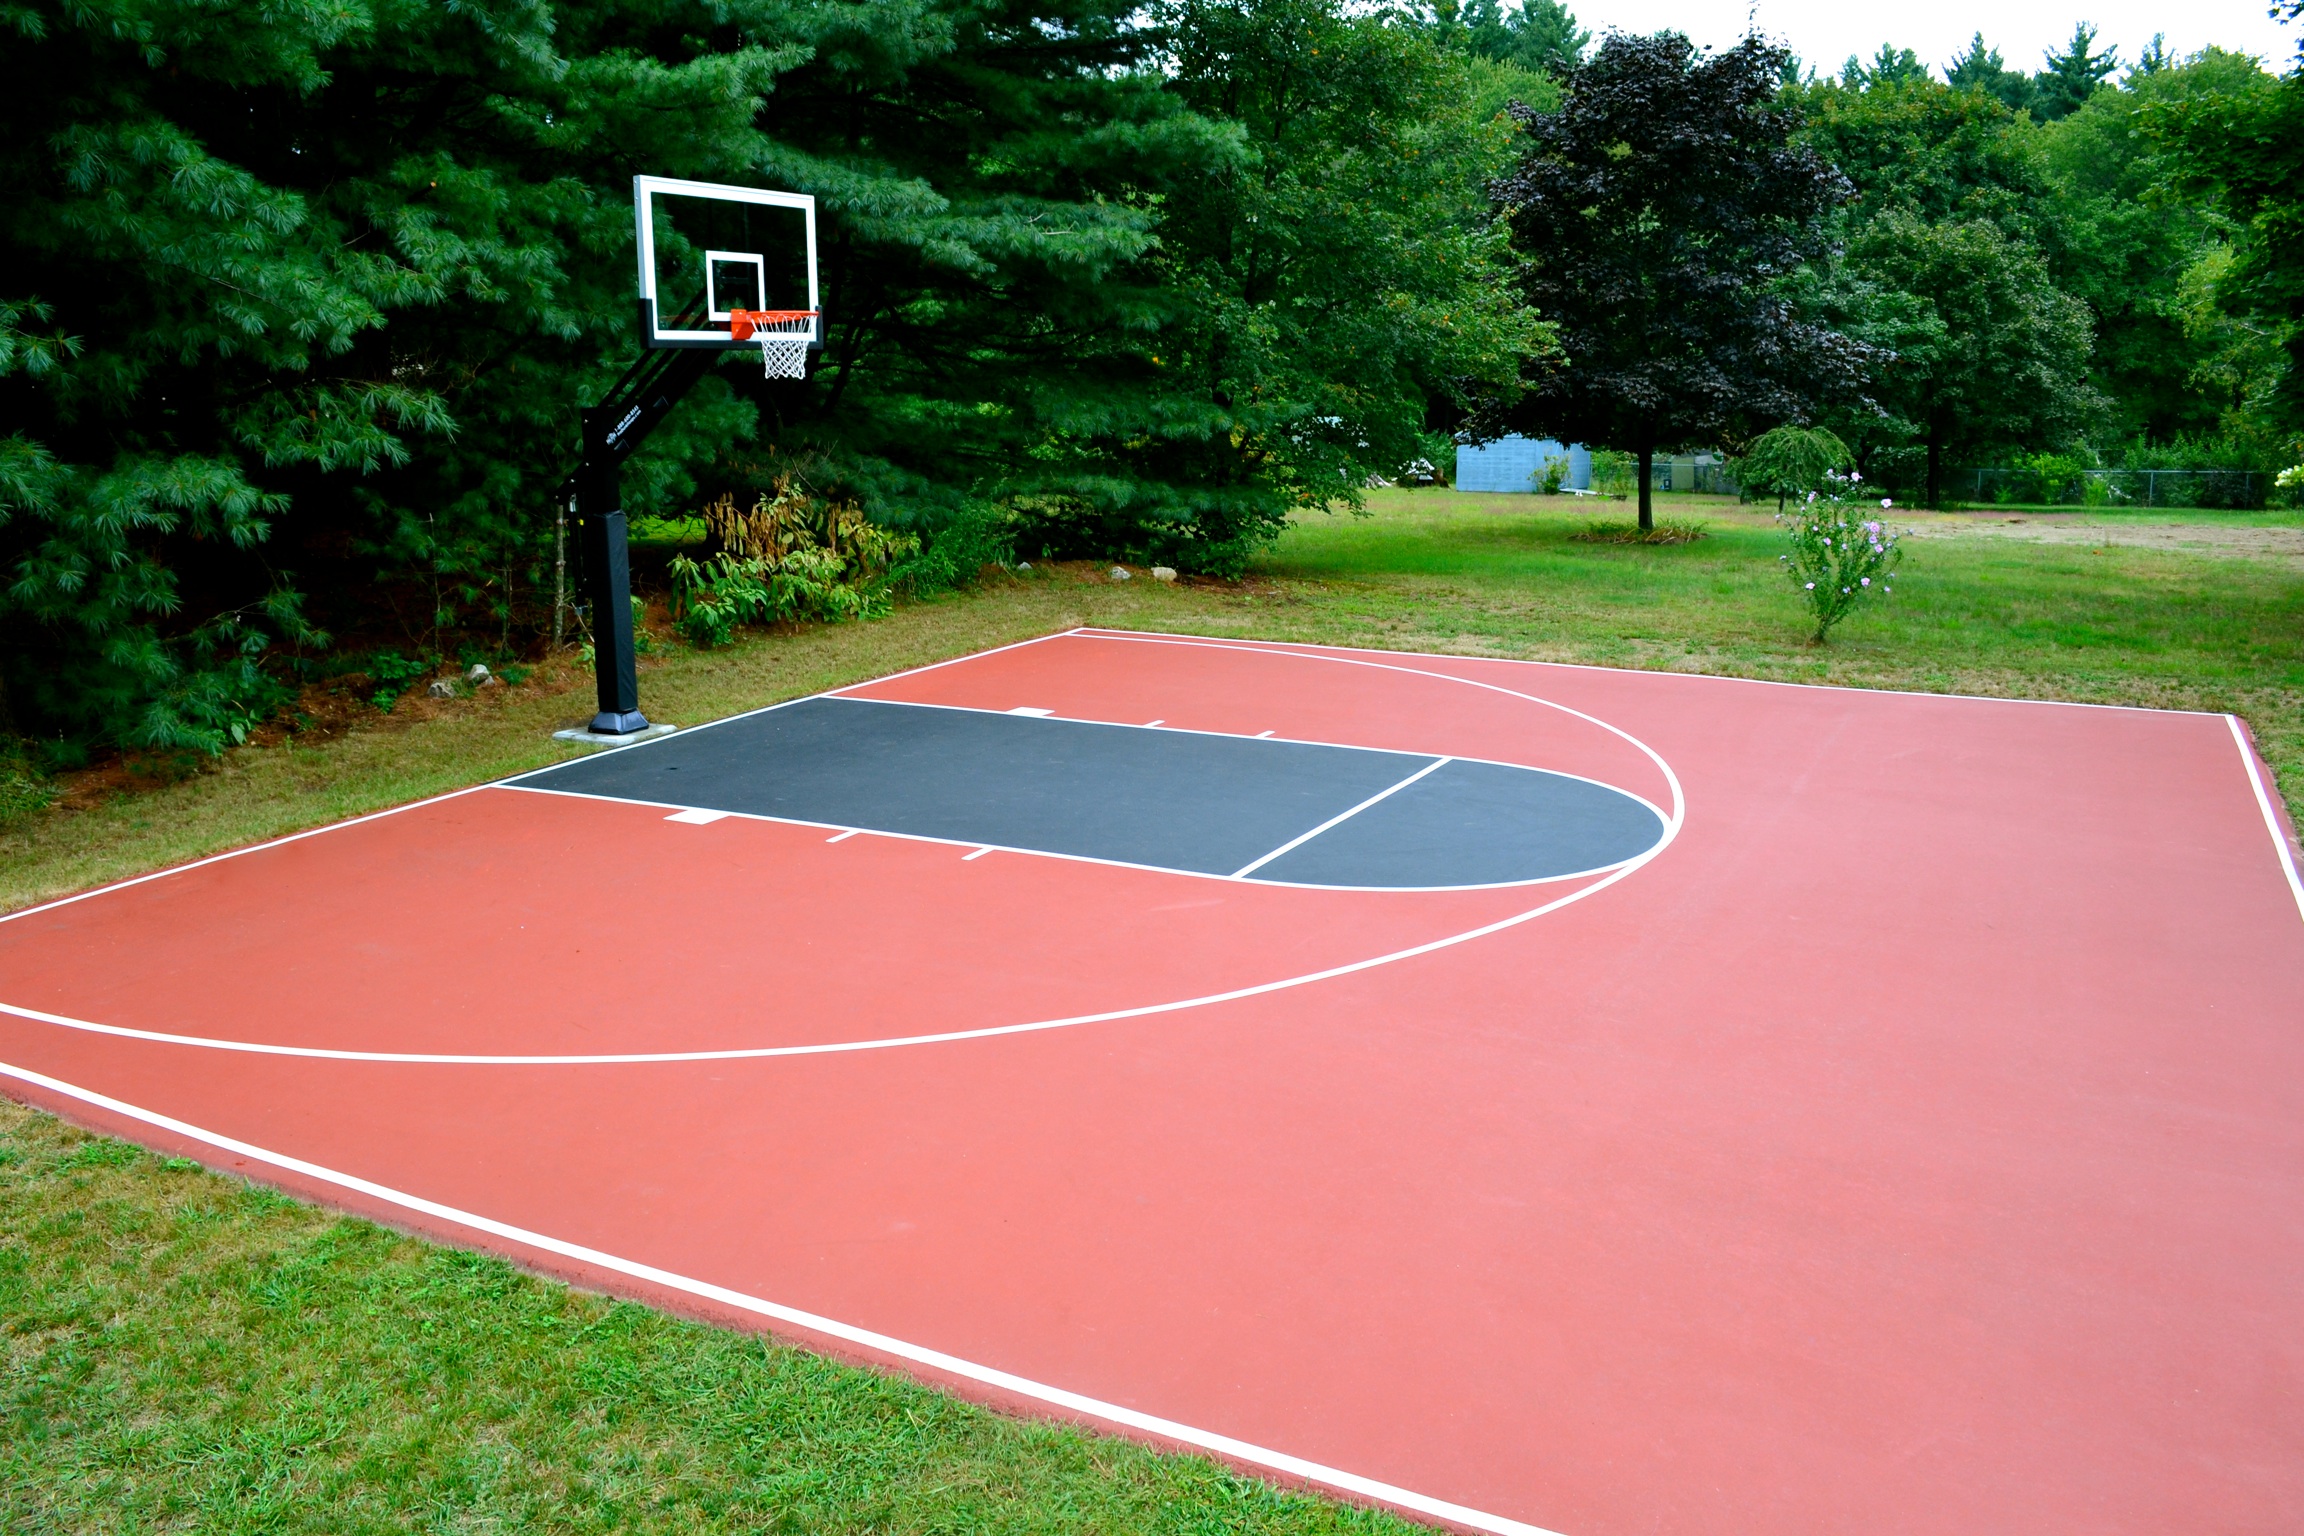 Backyard Basketball Court | All Basketball Scores Info